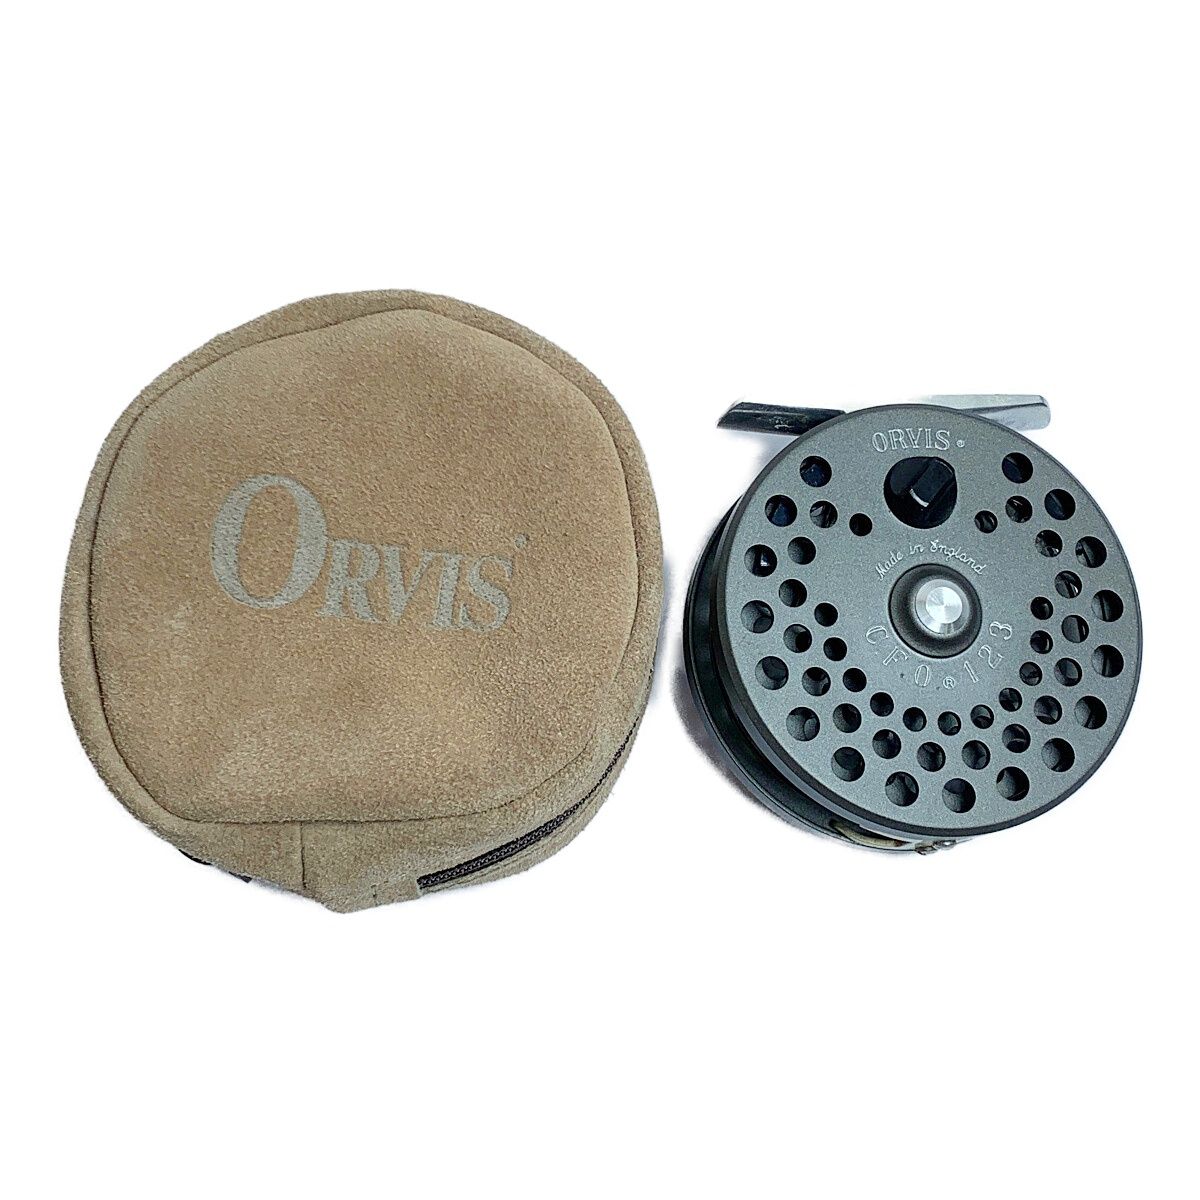 Orvis - CFO III Fly Reel - Multiplier